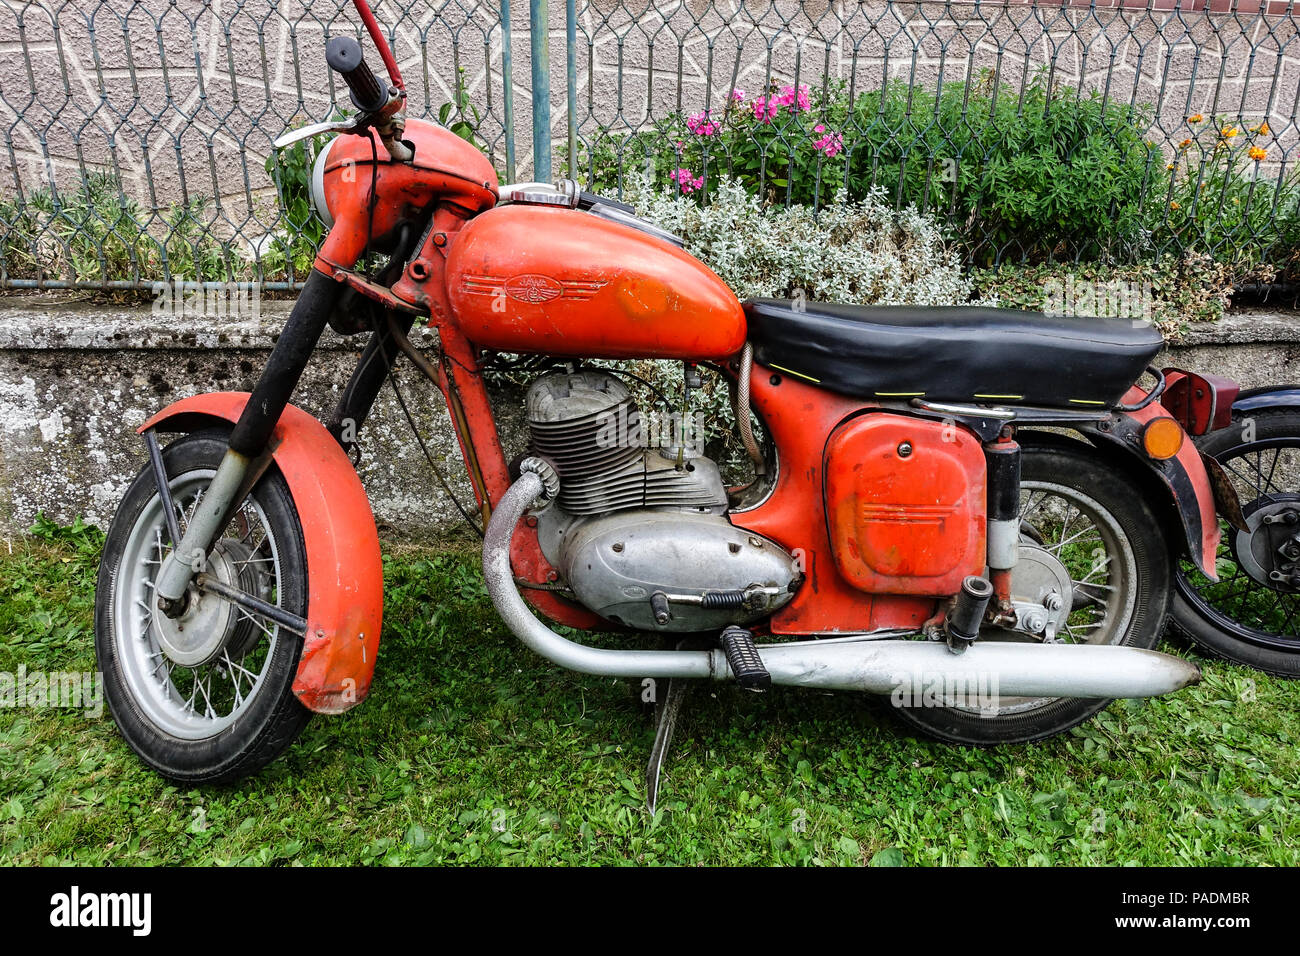 Czechoslovak product, motorcycle brand Jawa 250, Czech Republic Stock Photo